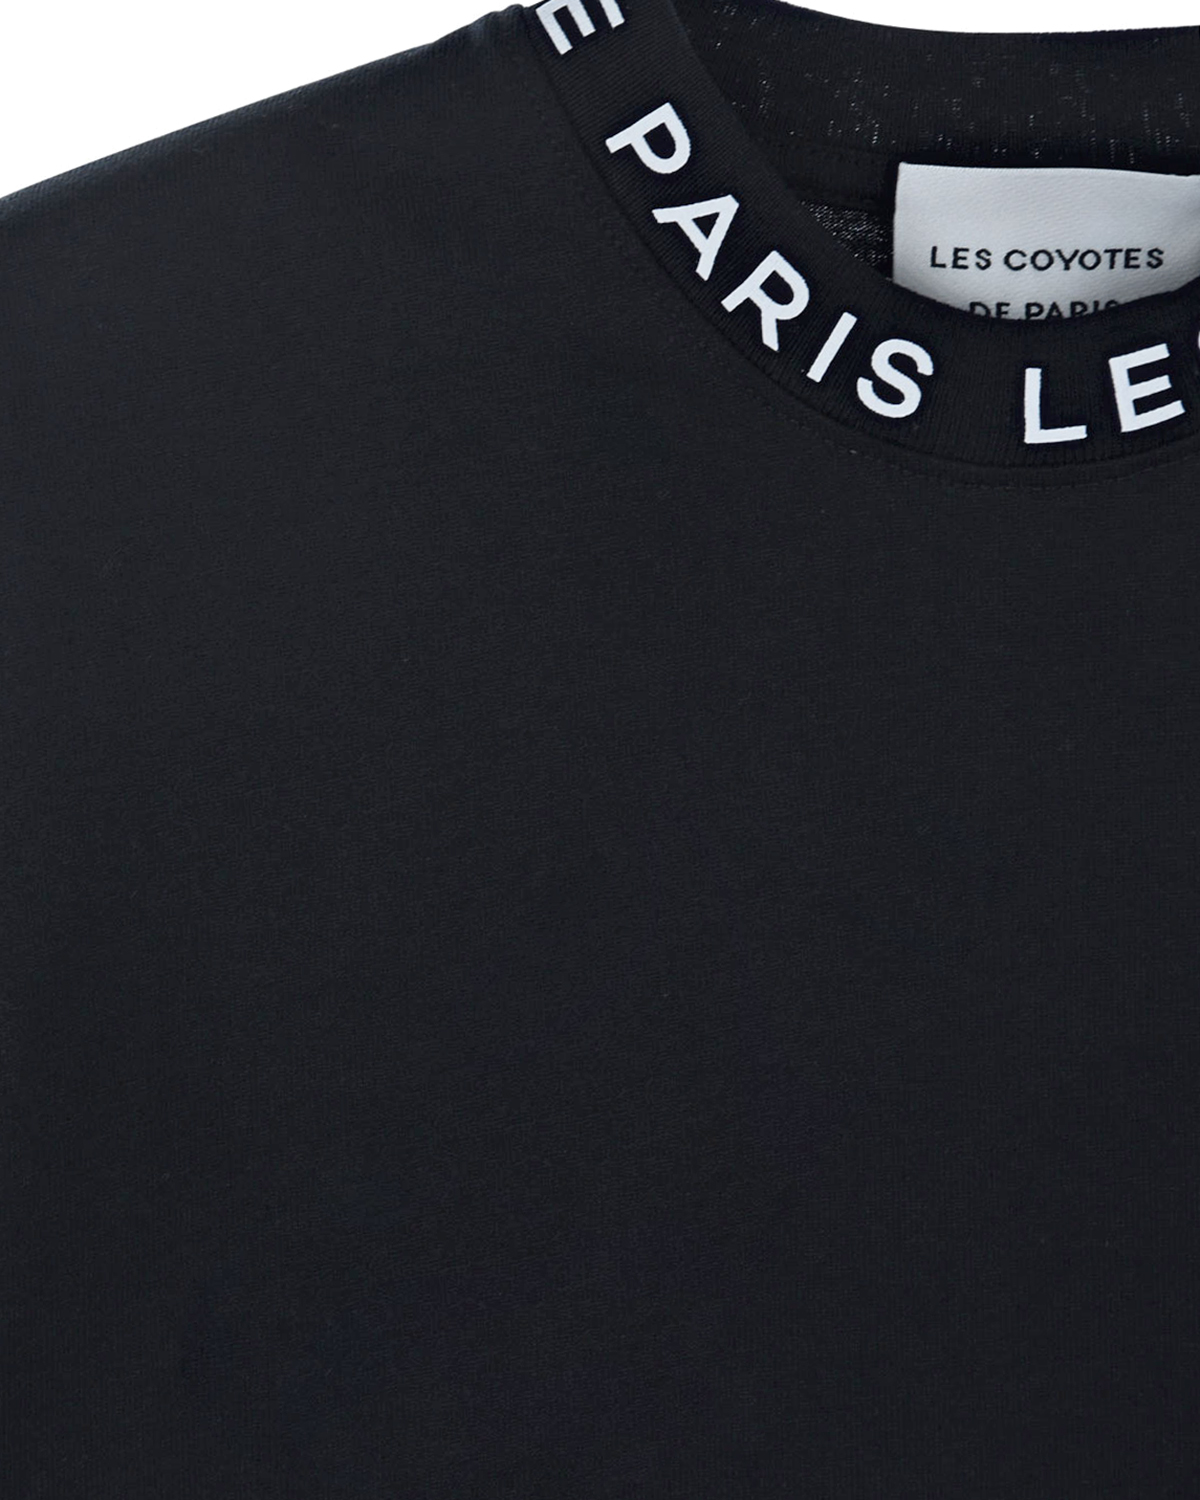 Черный свтишот с белым логотипом Les Coyotes de Paris детский, размер 164 - фото 3